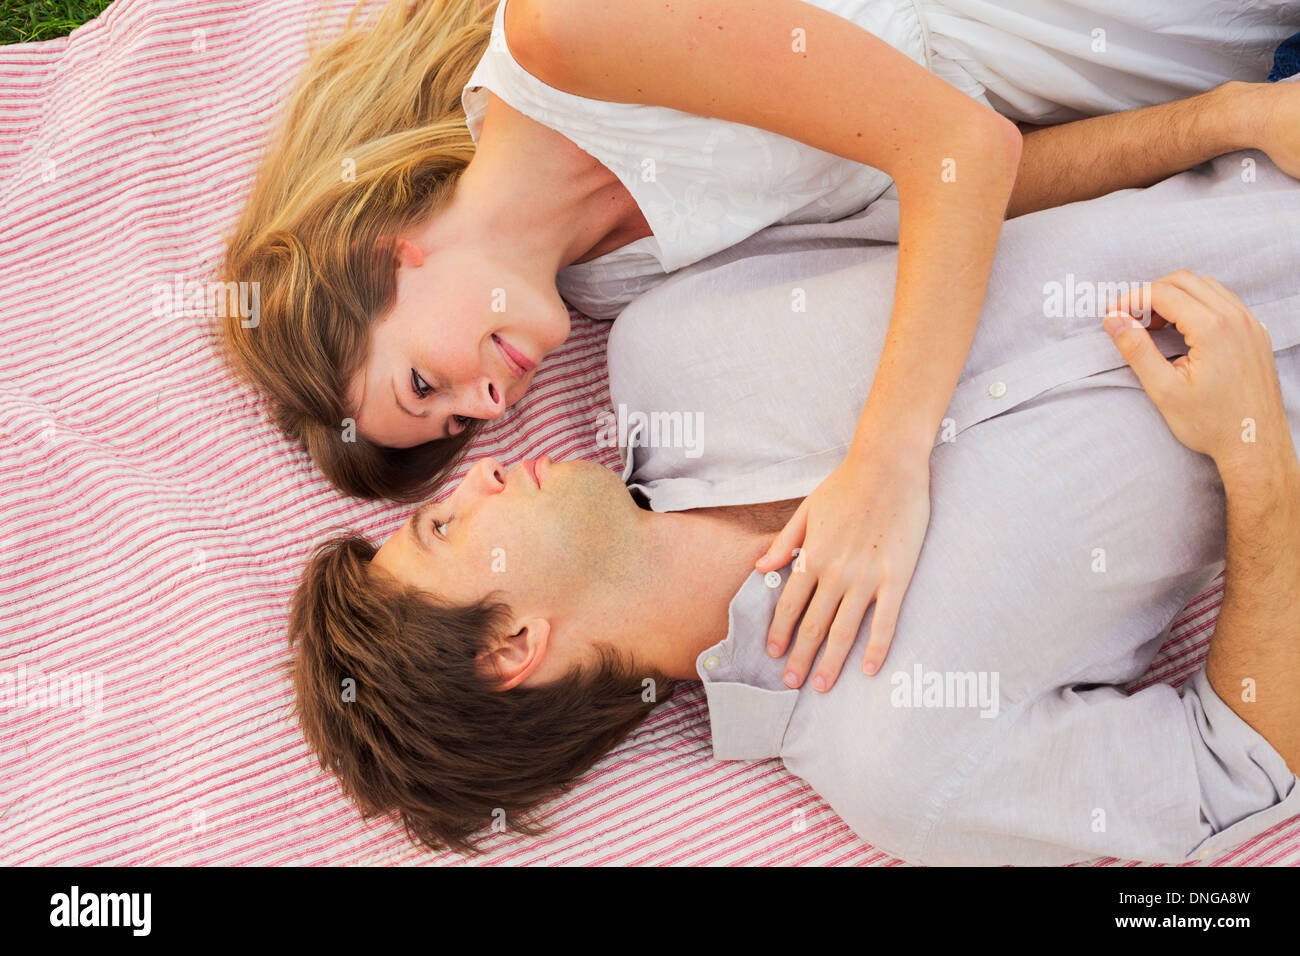 Pique-nique dans le parc romantique, loving couple cuddling on blanket outdoors on grass Banque D'Images